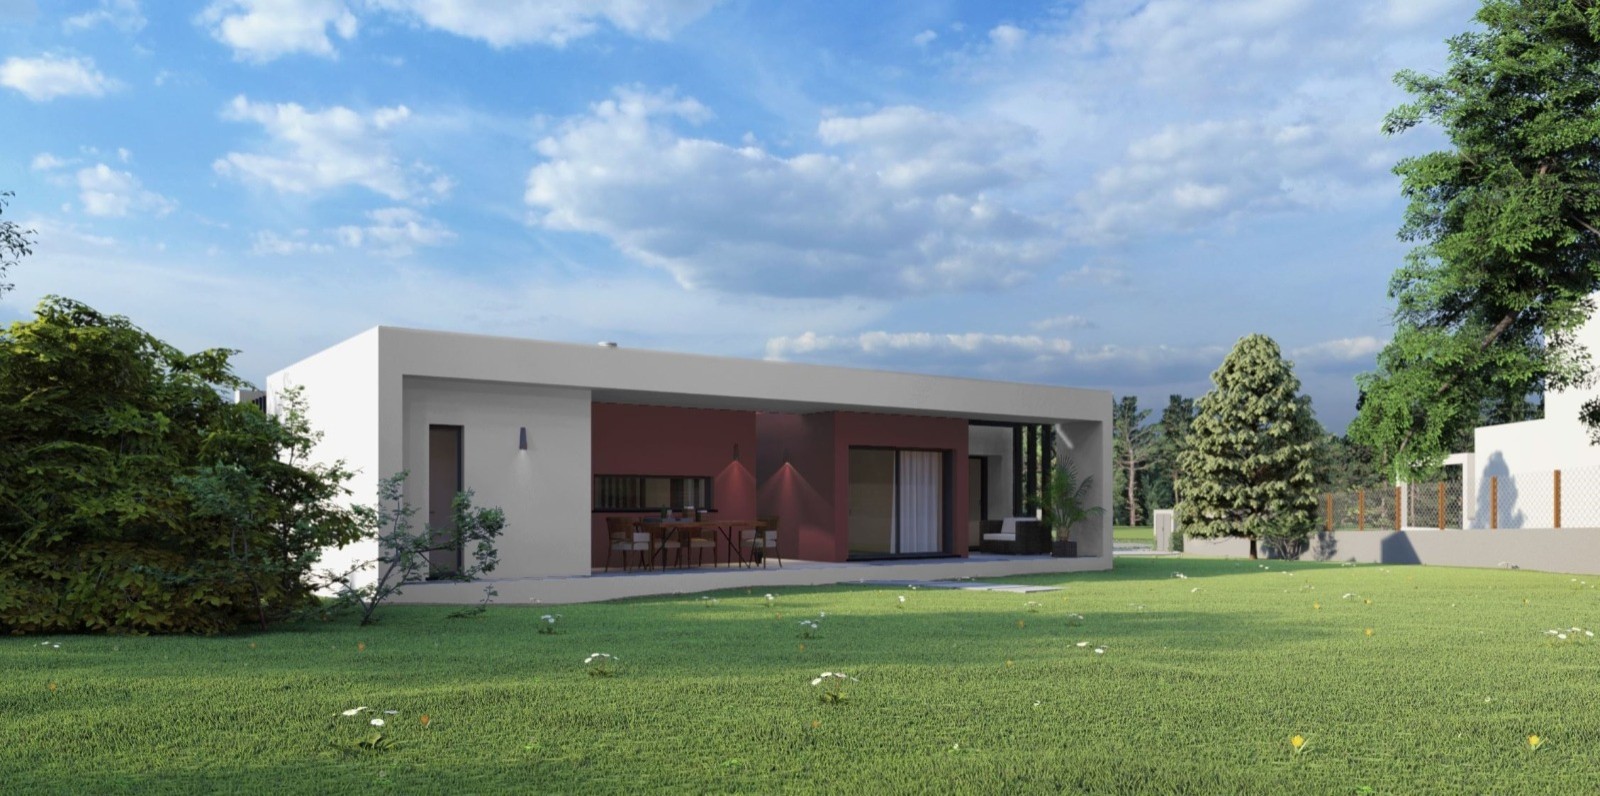 Building land, for sale, in Golf Resort - Algarve_215493